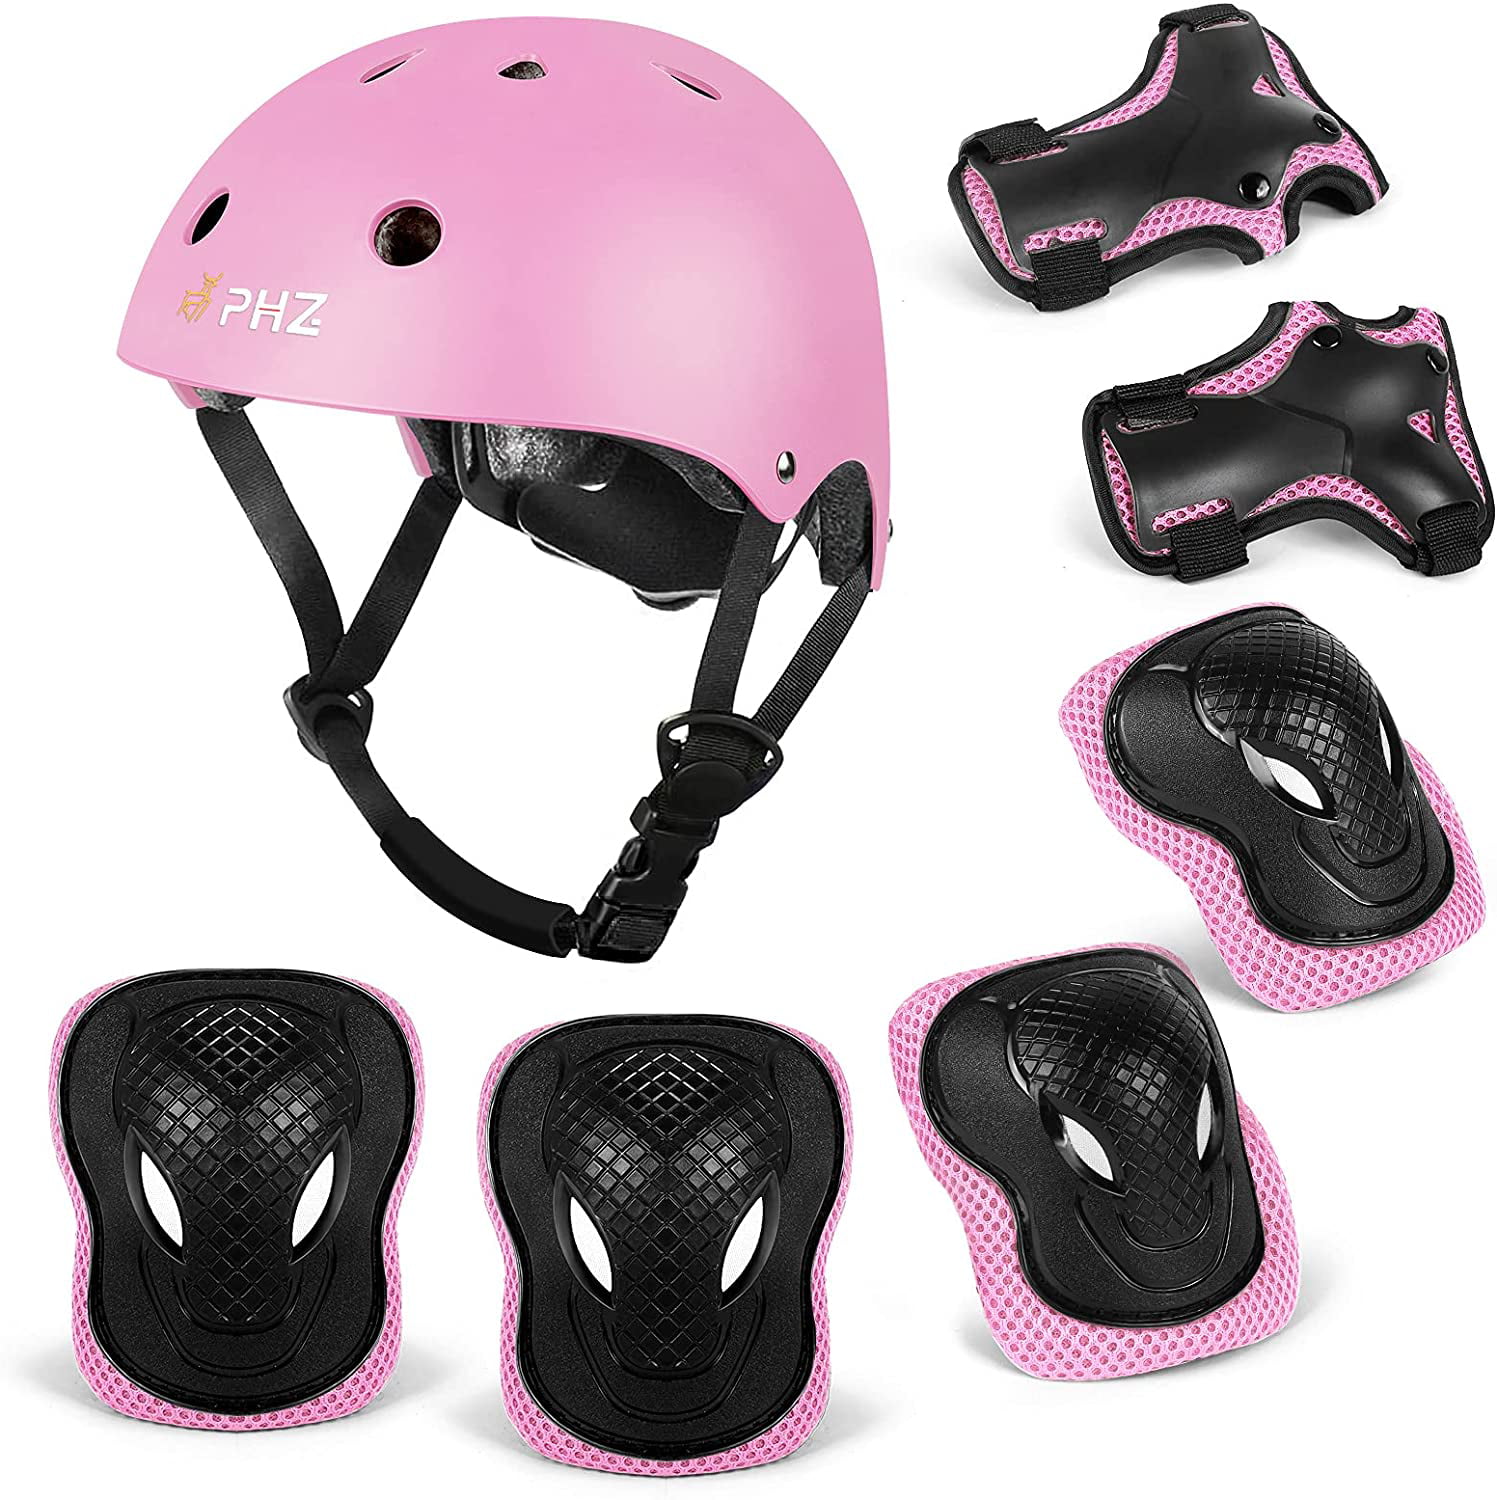 Kids Bike Skateboard Helmet Youth Cycling Scooter Rollerblading Protective Gear. Kids Helmet Knee Pads for Kids 3-14 Years Toddler Helmet 